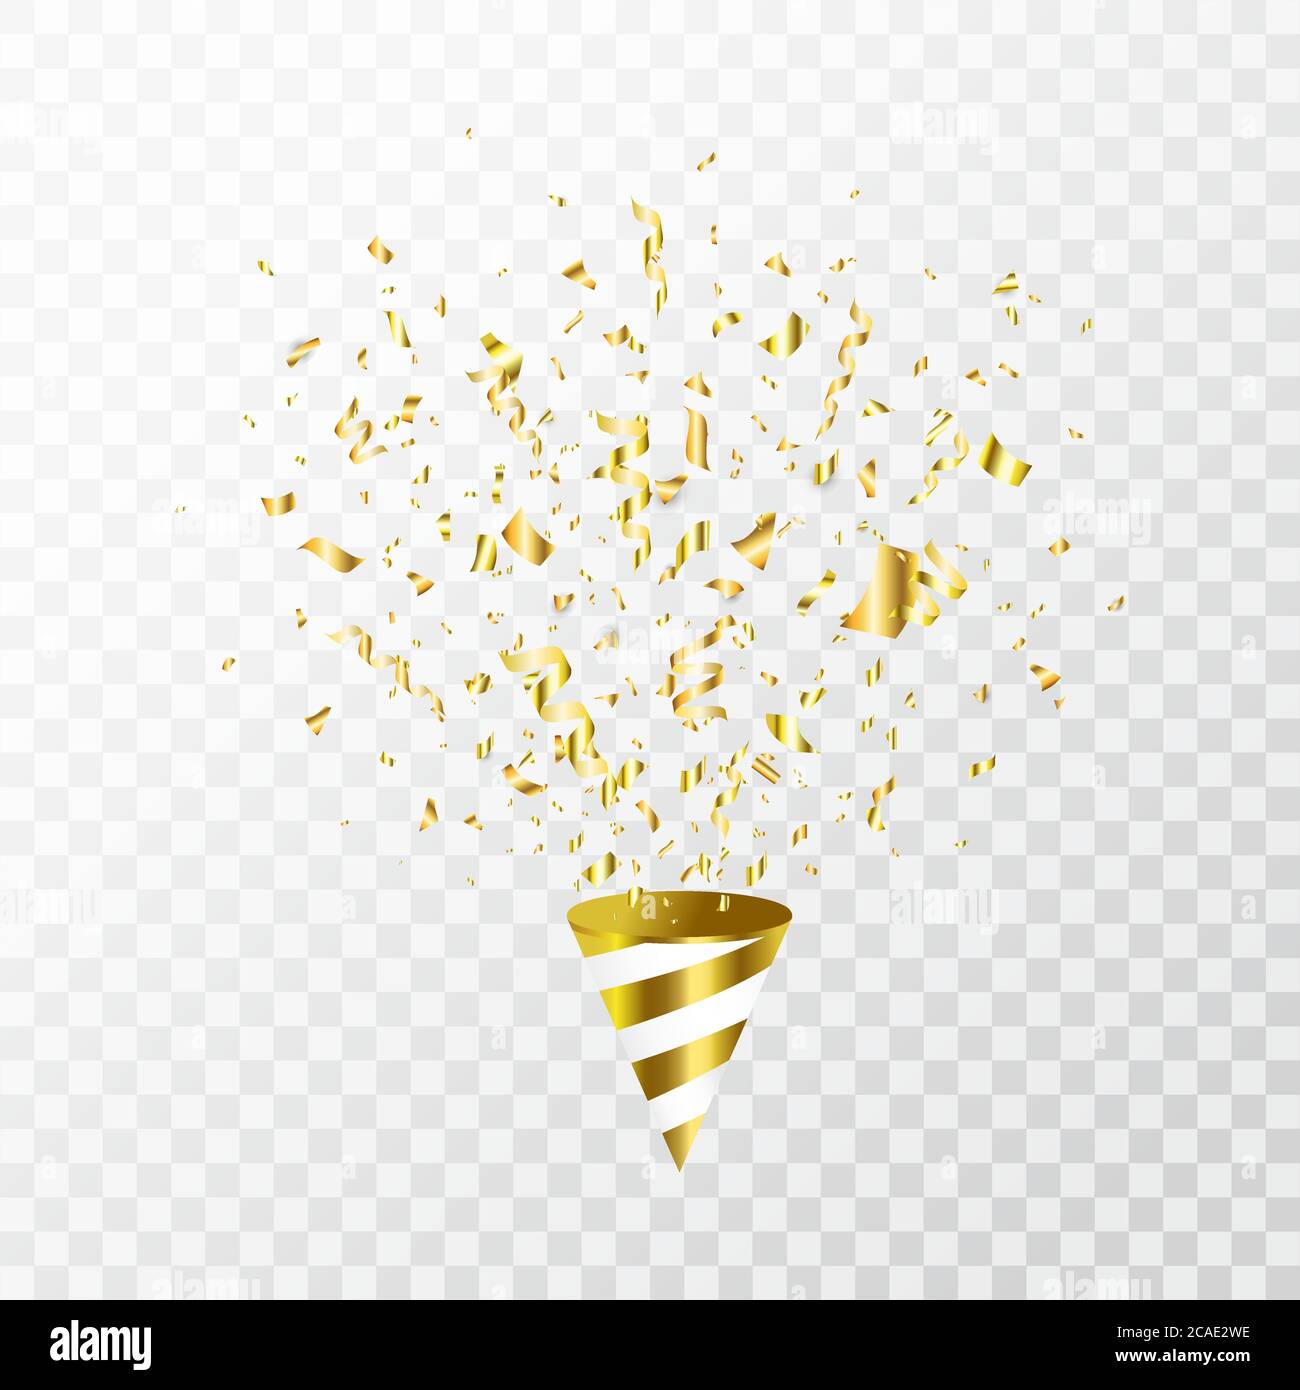 Confetti Vàng Bay Trên Nền Trong Suốt - Chào mừng bạn đến với những thước phim Confetti vàng bay trong không khí. Những hình ảnh này sẽ làm cho sự kiện của bạn trở nên thú vị và đầy ý nghĩa. Hãy cùng xem qua những chi tiết độc đáo mà confetti vàng mang lại cho sự kiện của bạn nhé!